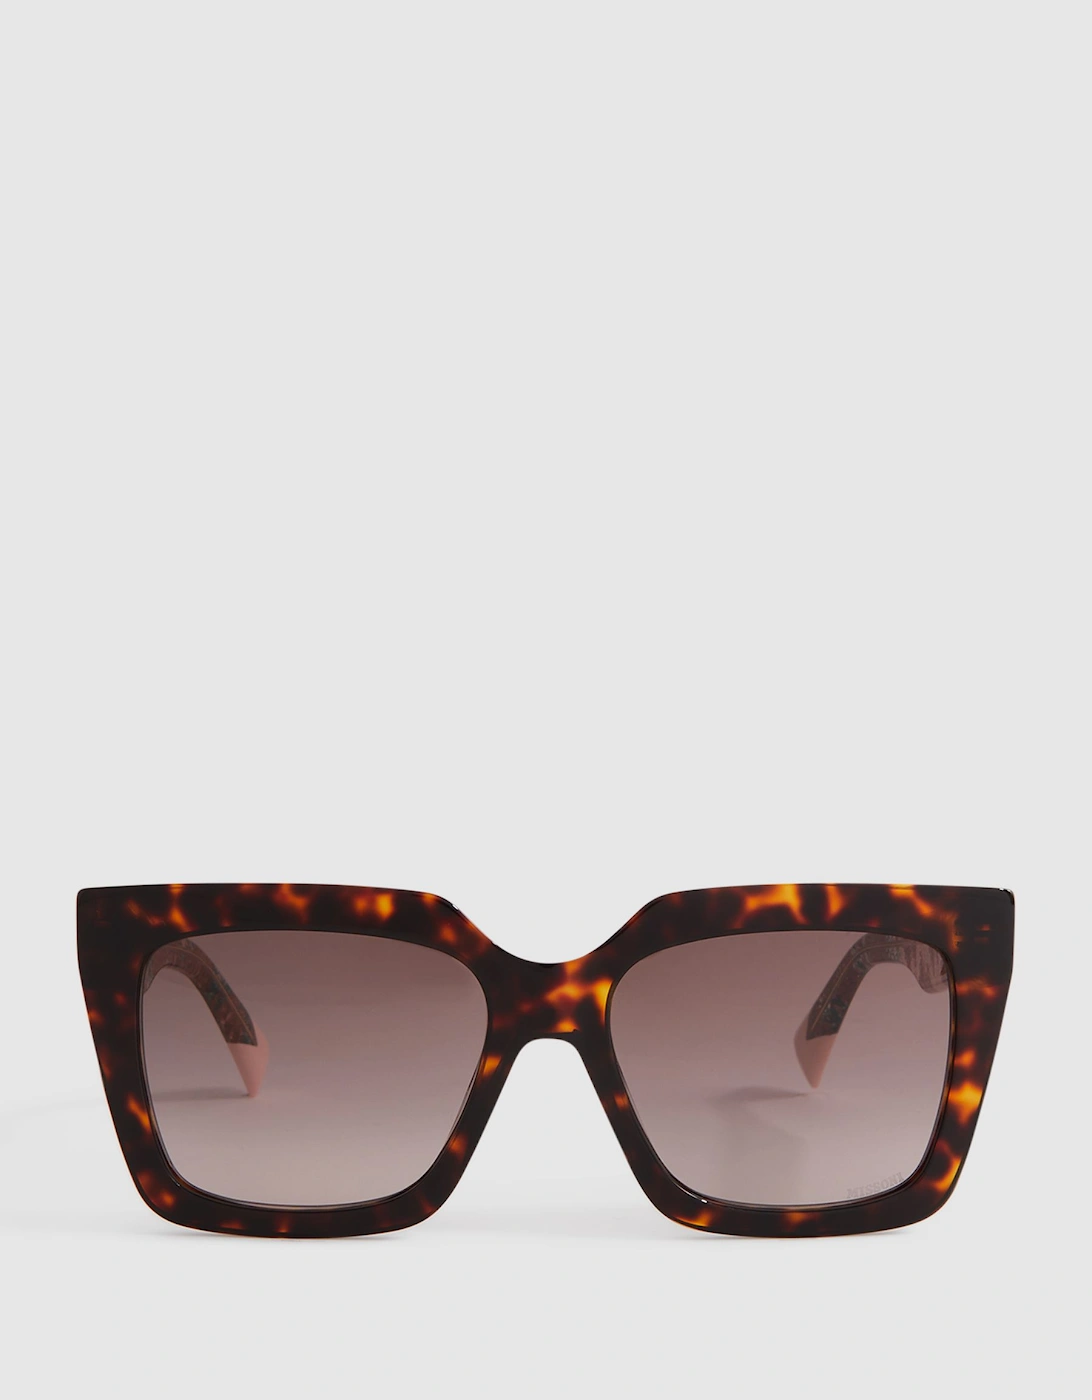 Missoni Eyewear Tortoiseshell Sunglasses, 2 of 1